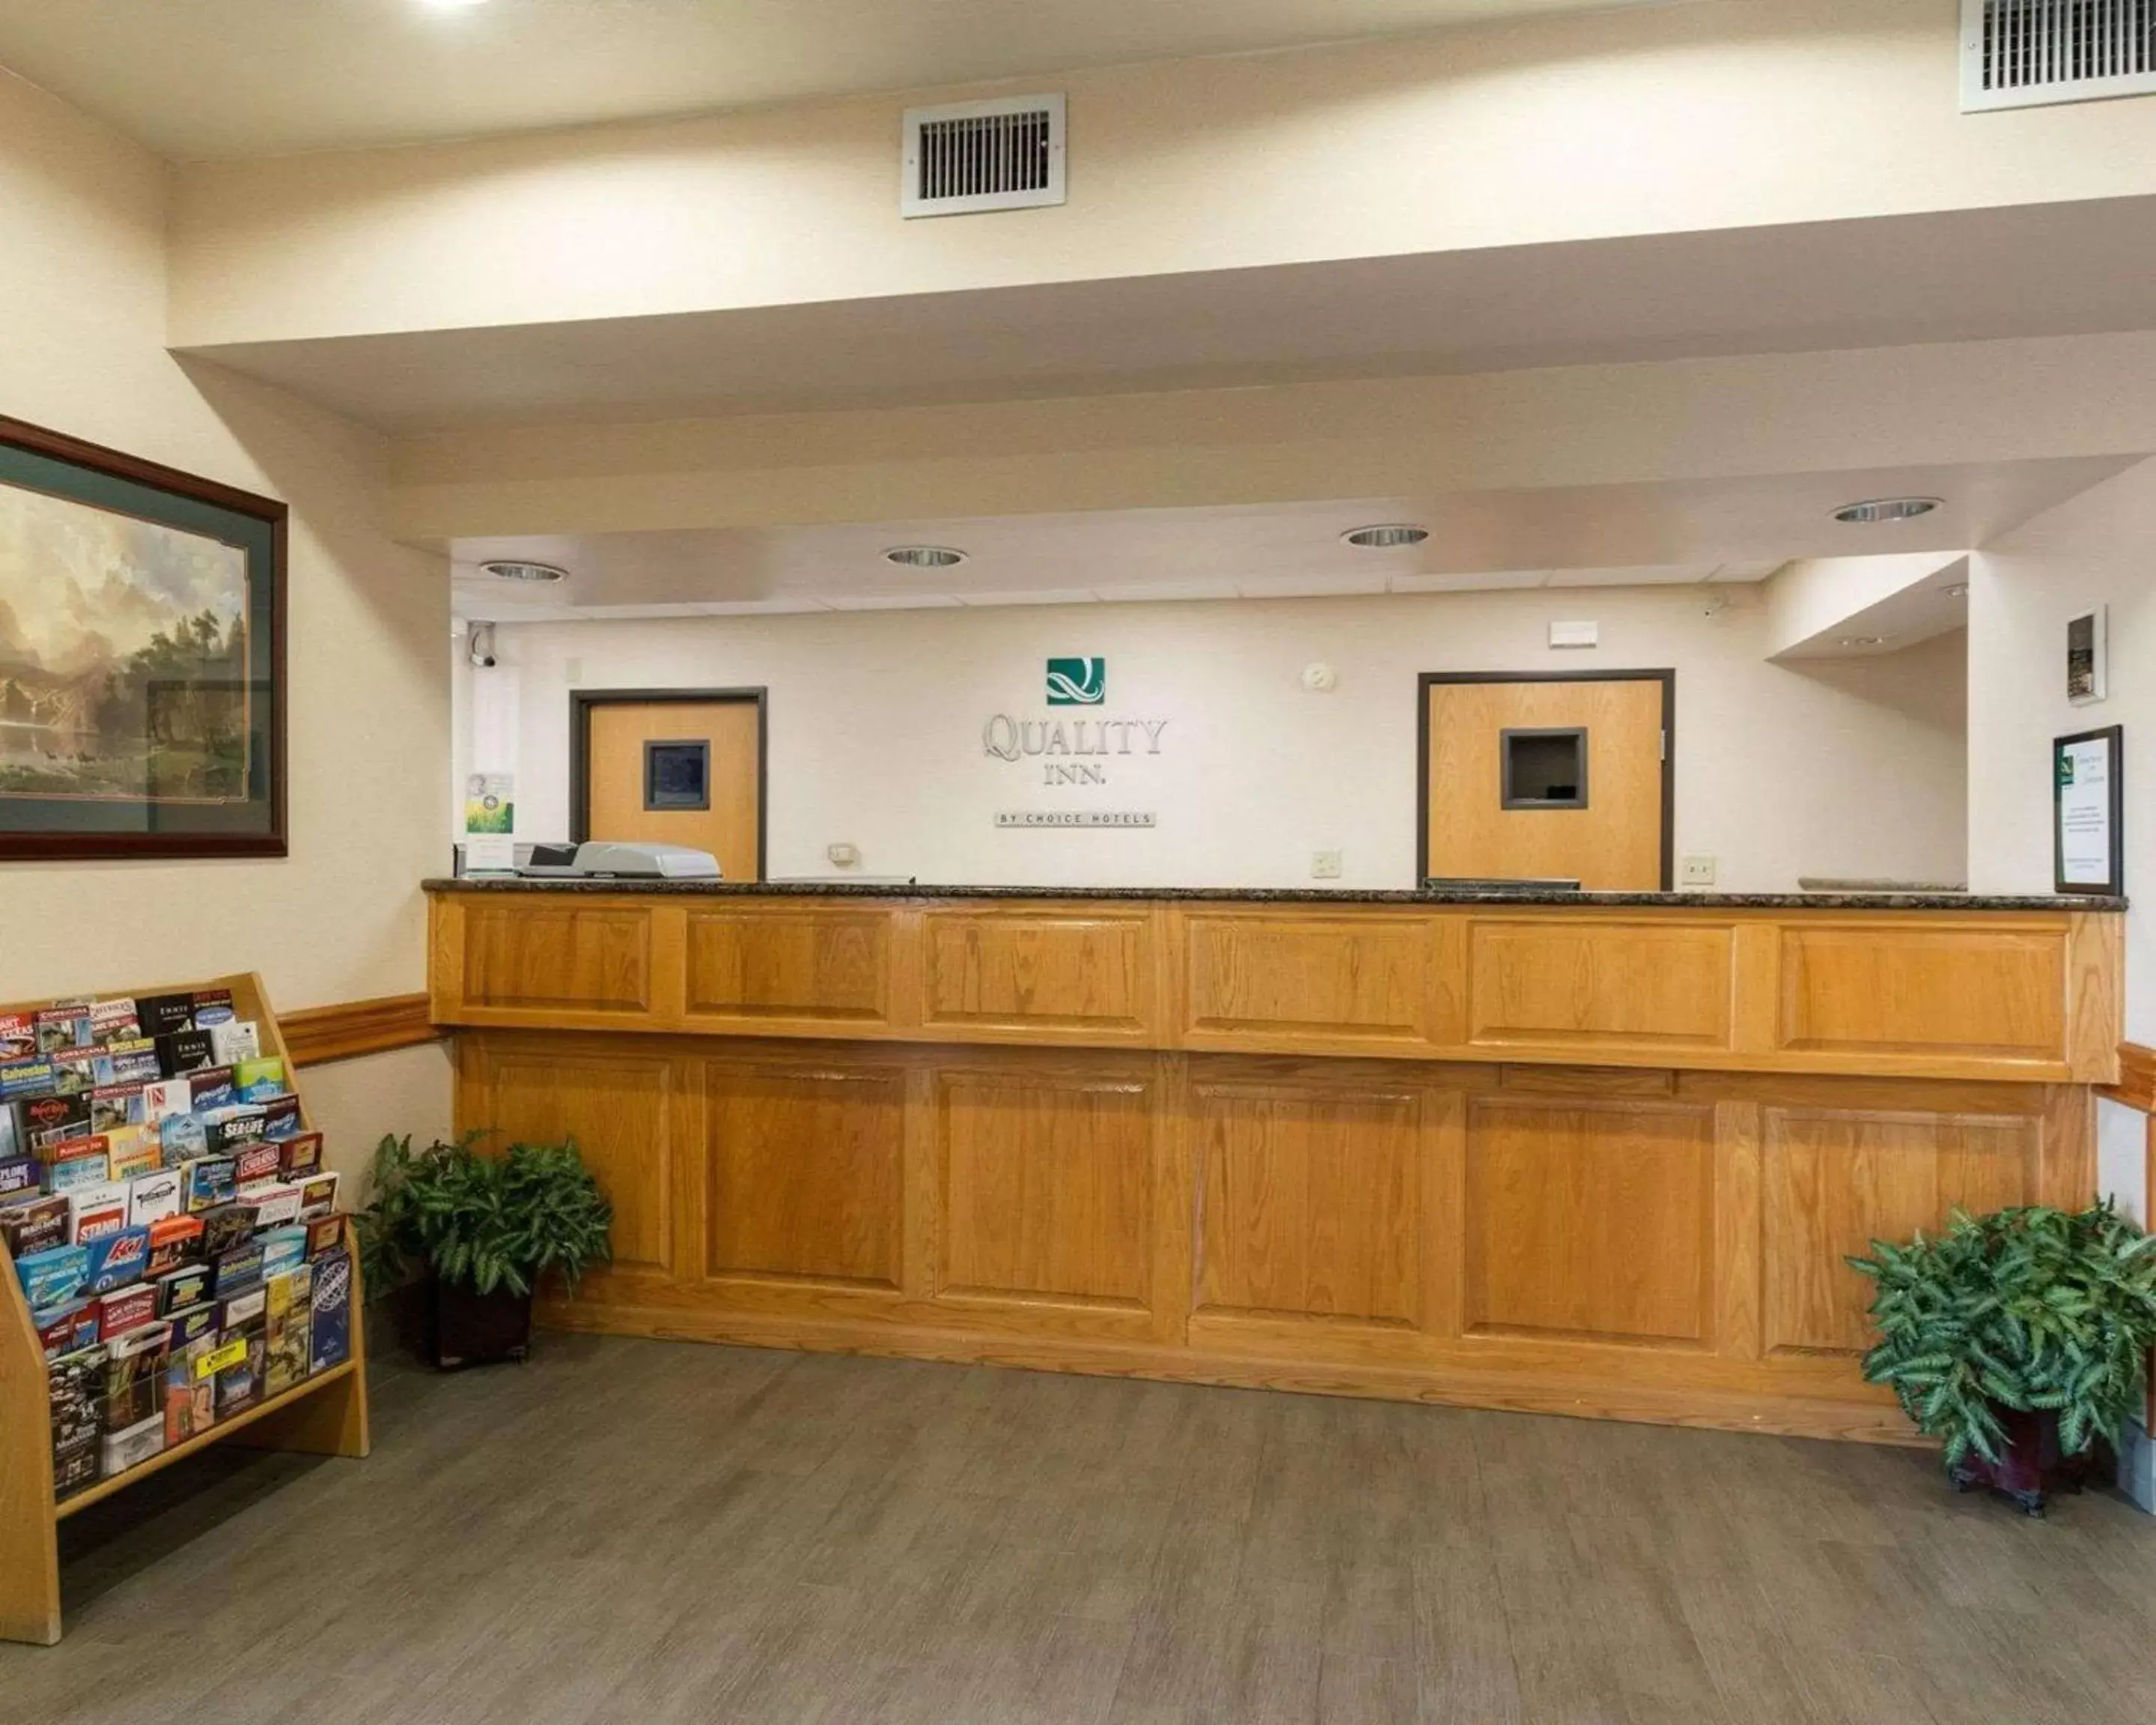 Lobby or reception, Lobby/Reception in Quality Inn Buffalo